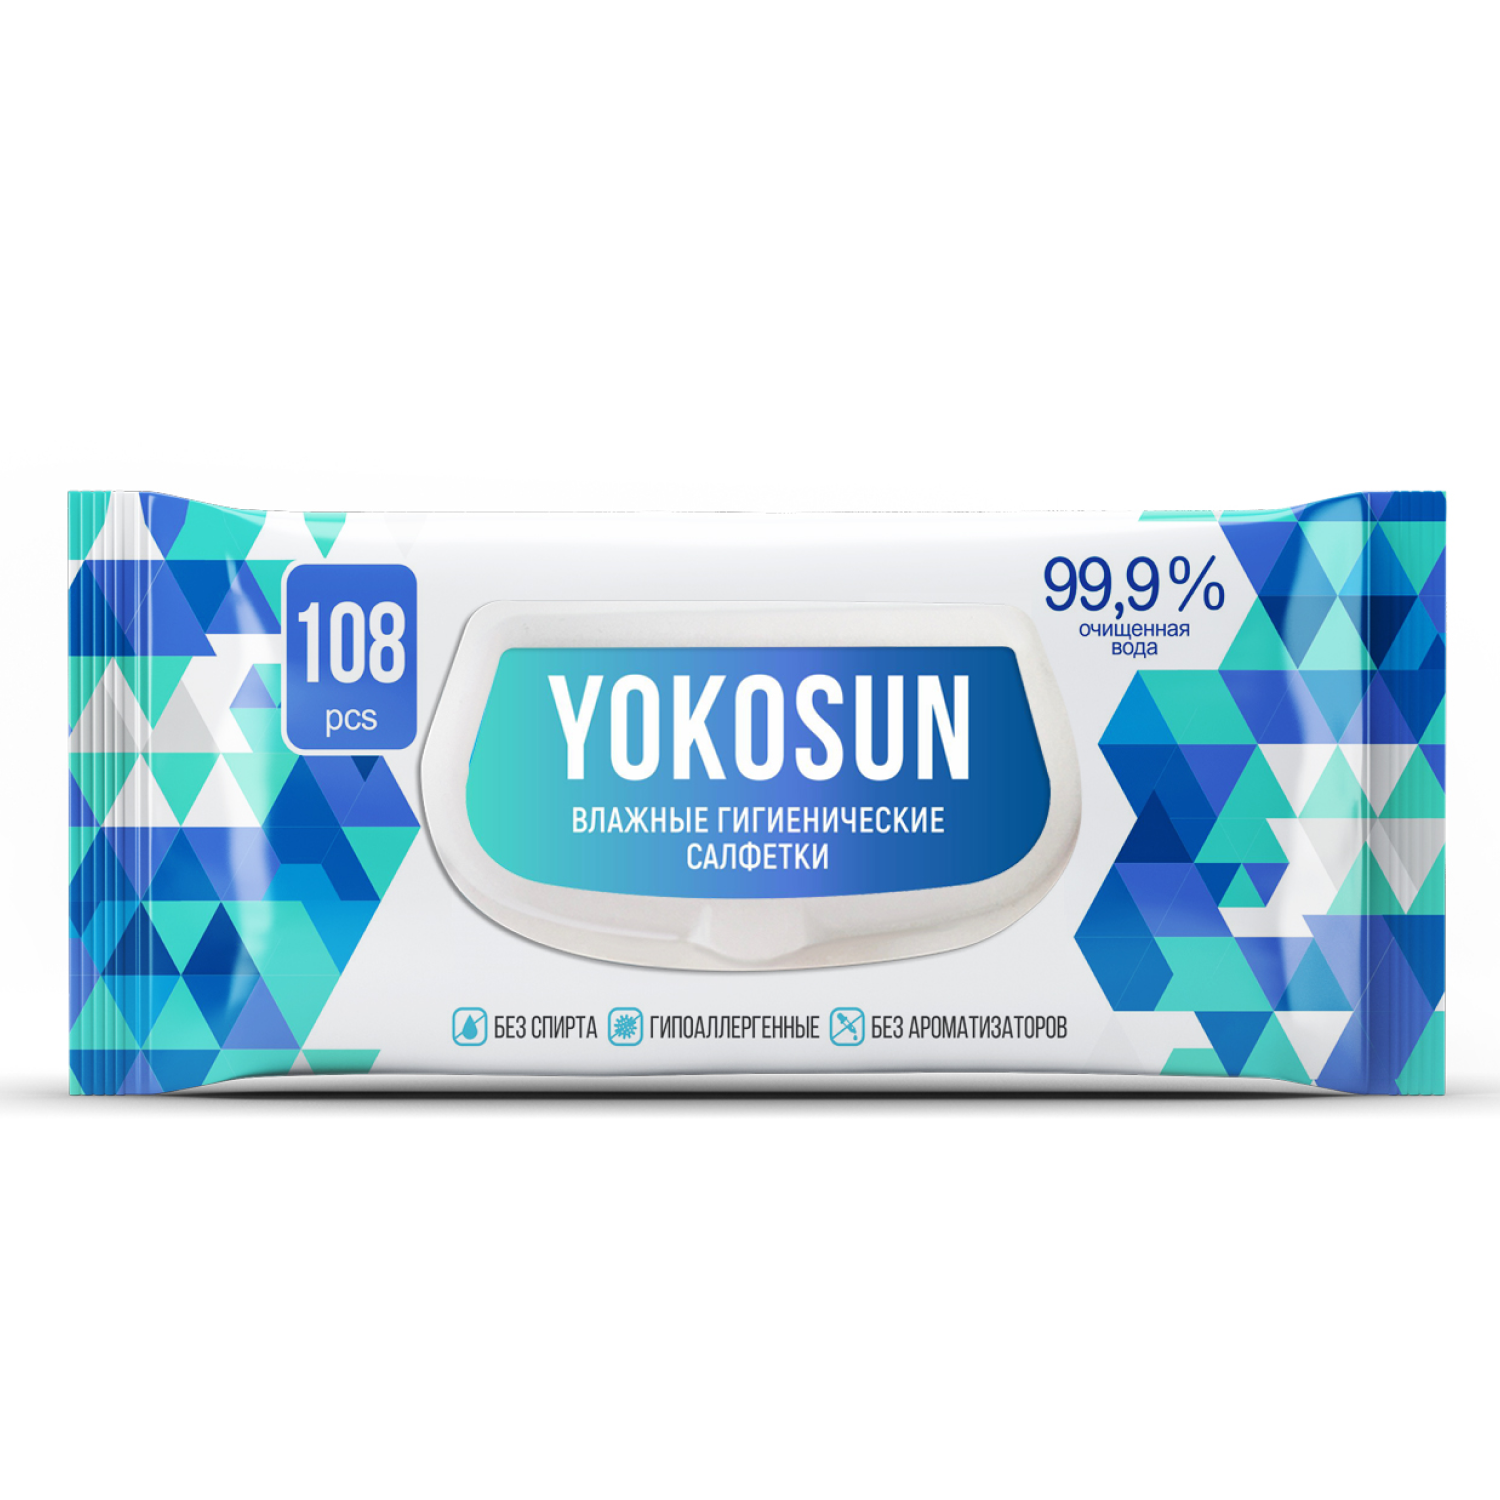 Антибактериальные влажные гигиенические салфетки YokoSun, 108 шт yokosun бумажные гигиенические салфетки детские 200